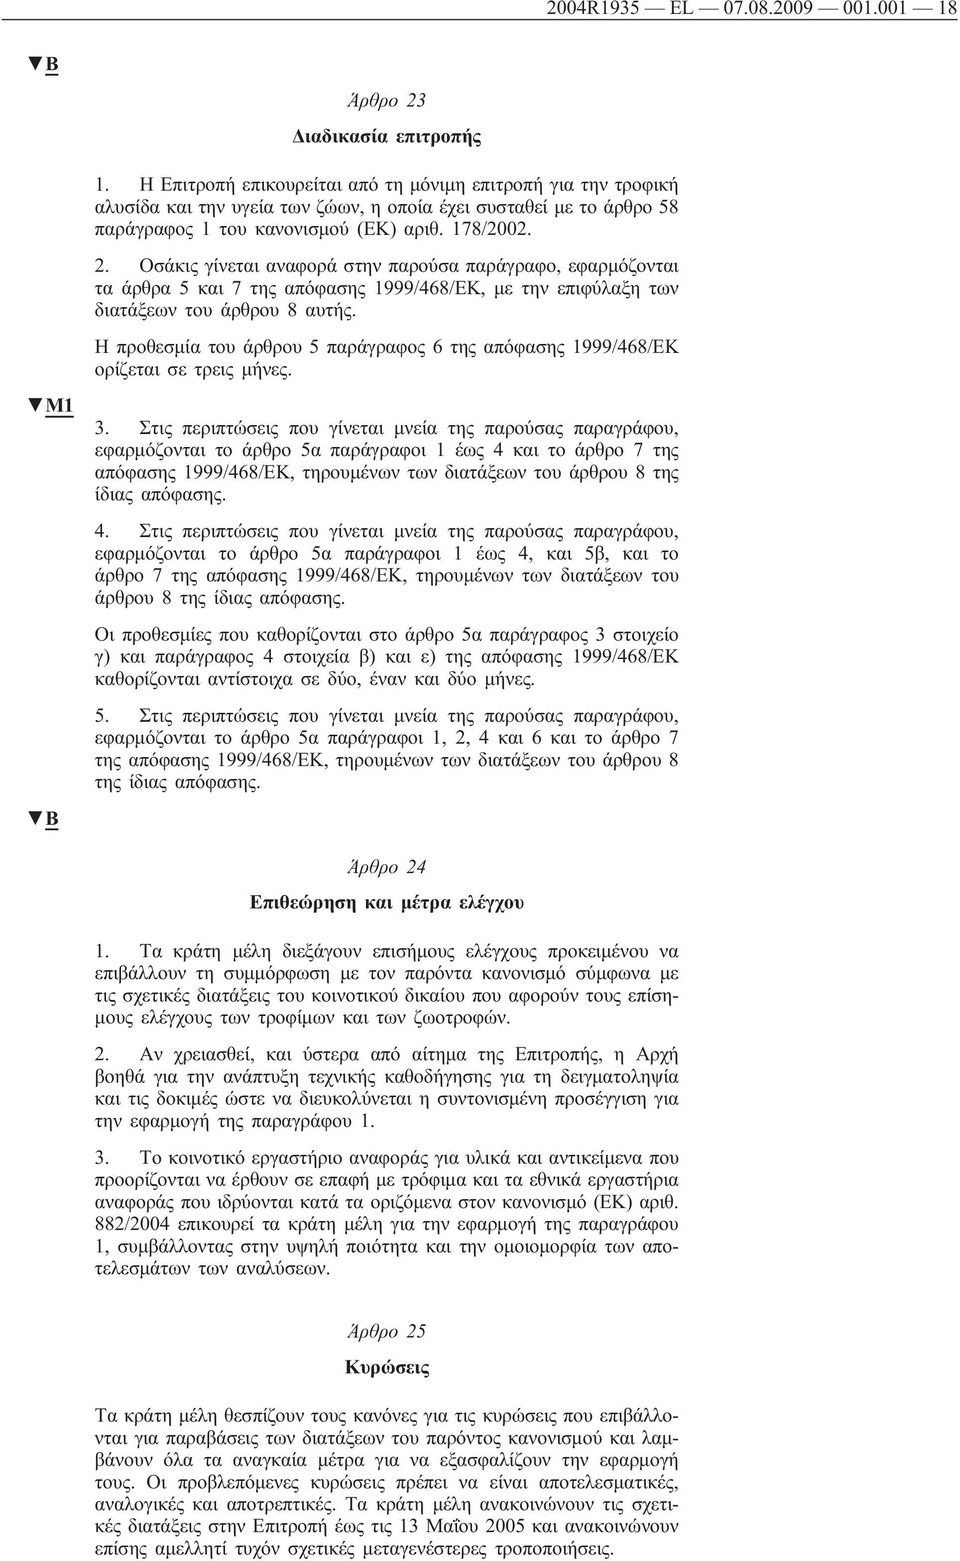 Οσάκις γίνεται αναφορά στην παρούσα παράγραφο, εφαρμόζονται τα άρθρα 5 και 7 της απόφασης 1999/468/ΕΚ, με την επιφύλαξη των διατάξεων του άρθρου 8 αυτής.